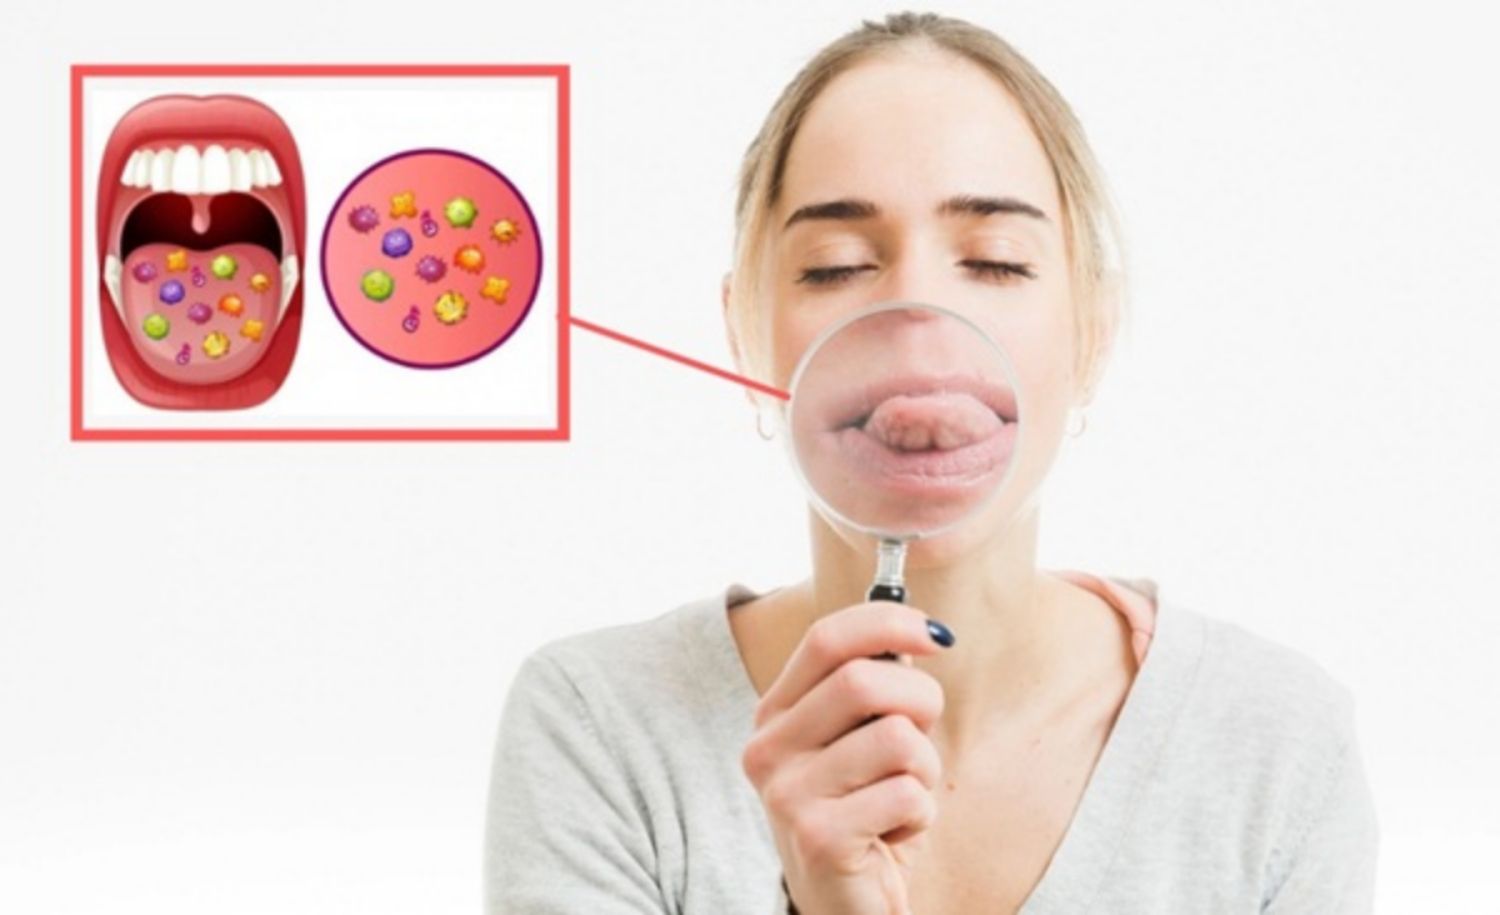 Nếu người bị bệnh xã hội không có triệu chứng, vẫn có thể lây nhiễm khi quan hệ bằng miệng?
